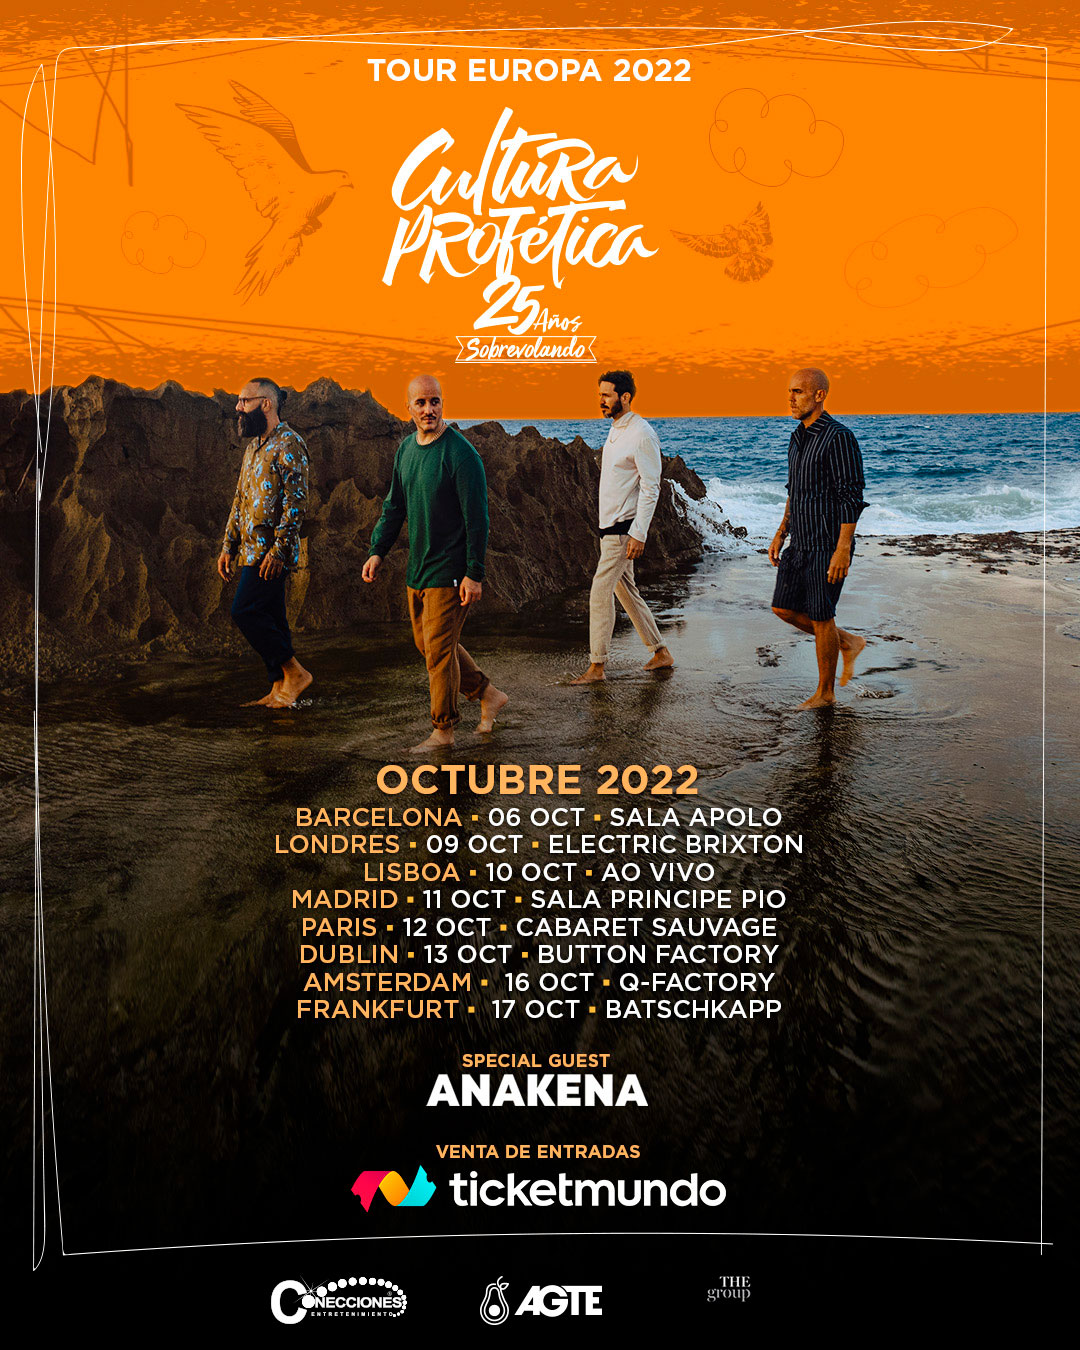 European tour for Cultura Profética 2022